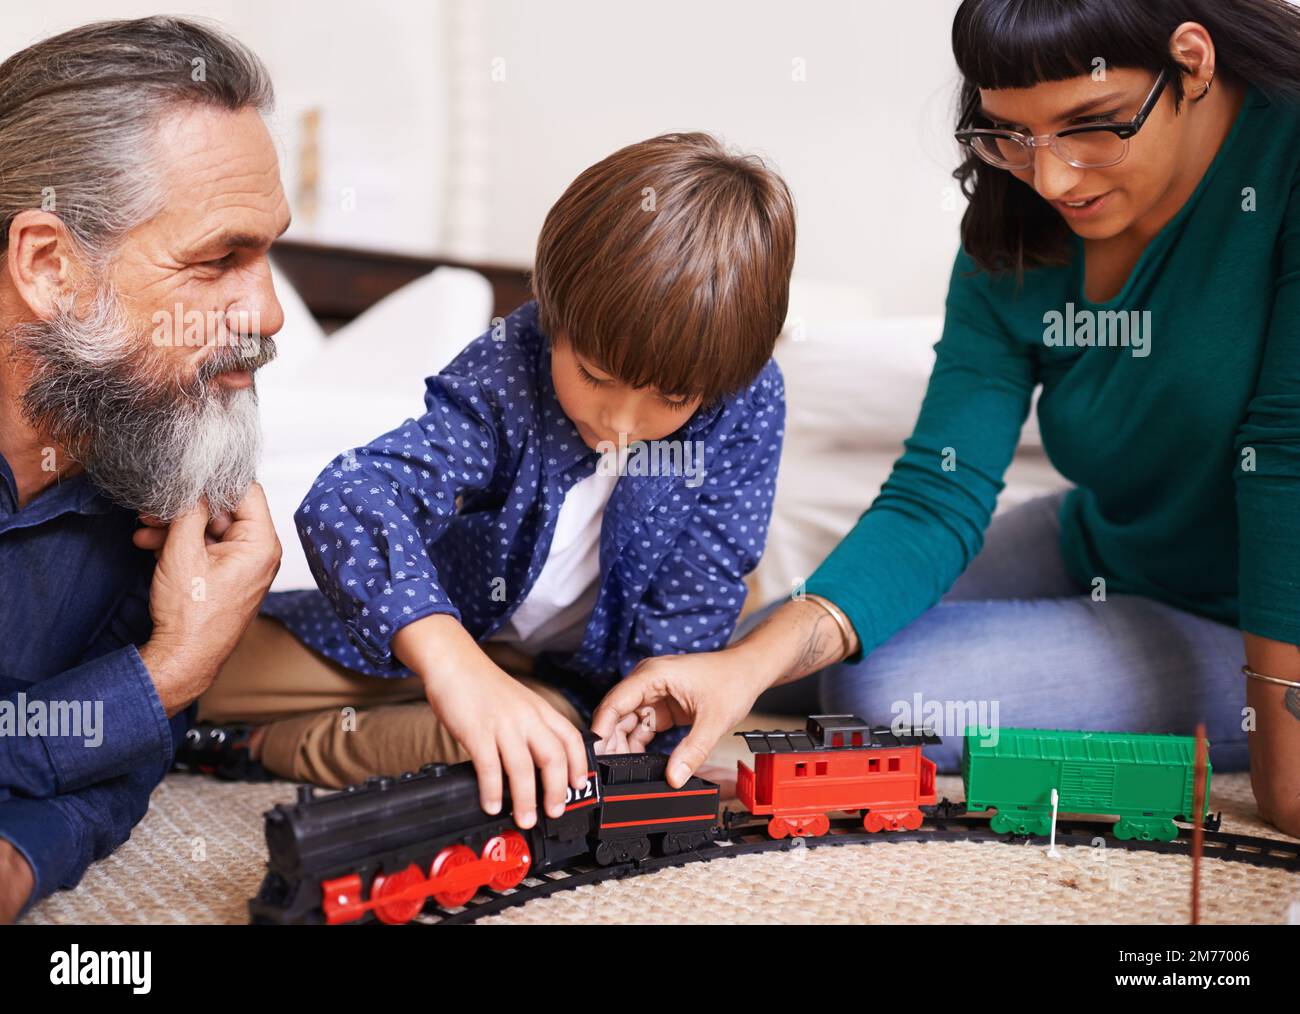 Mostrando a los adultos cómo montar el tren. una madre y un abuelo viendo a un niño jugar con un tren de juguete. Foto de stock